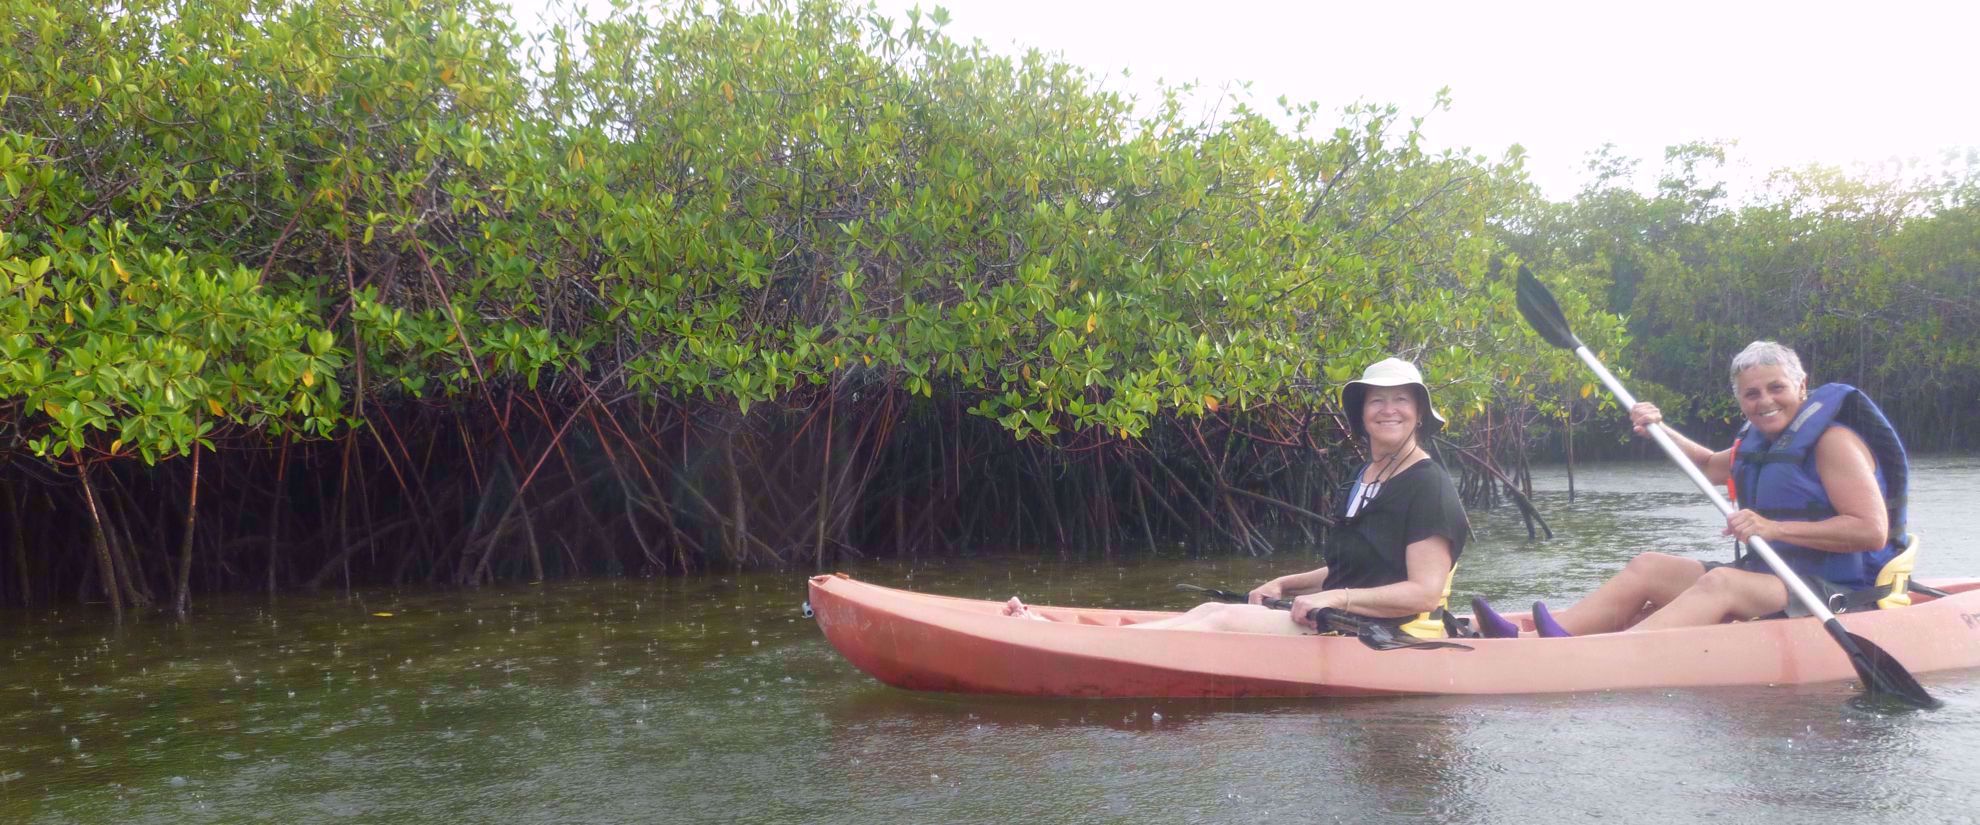 women kayaking on group travel tour through galapagos islands